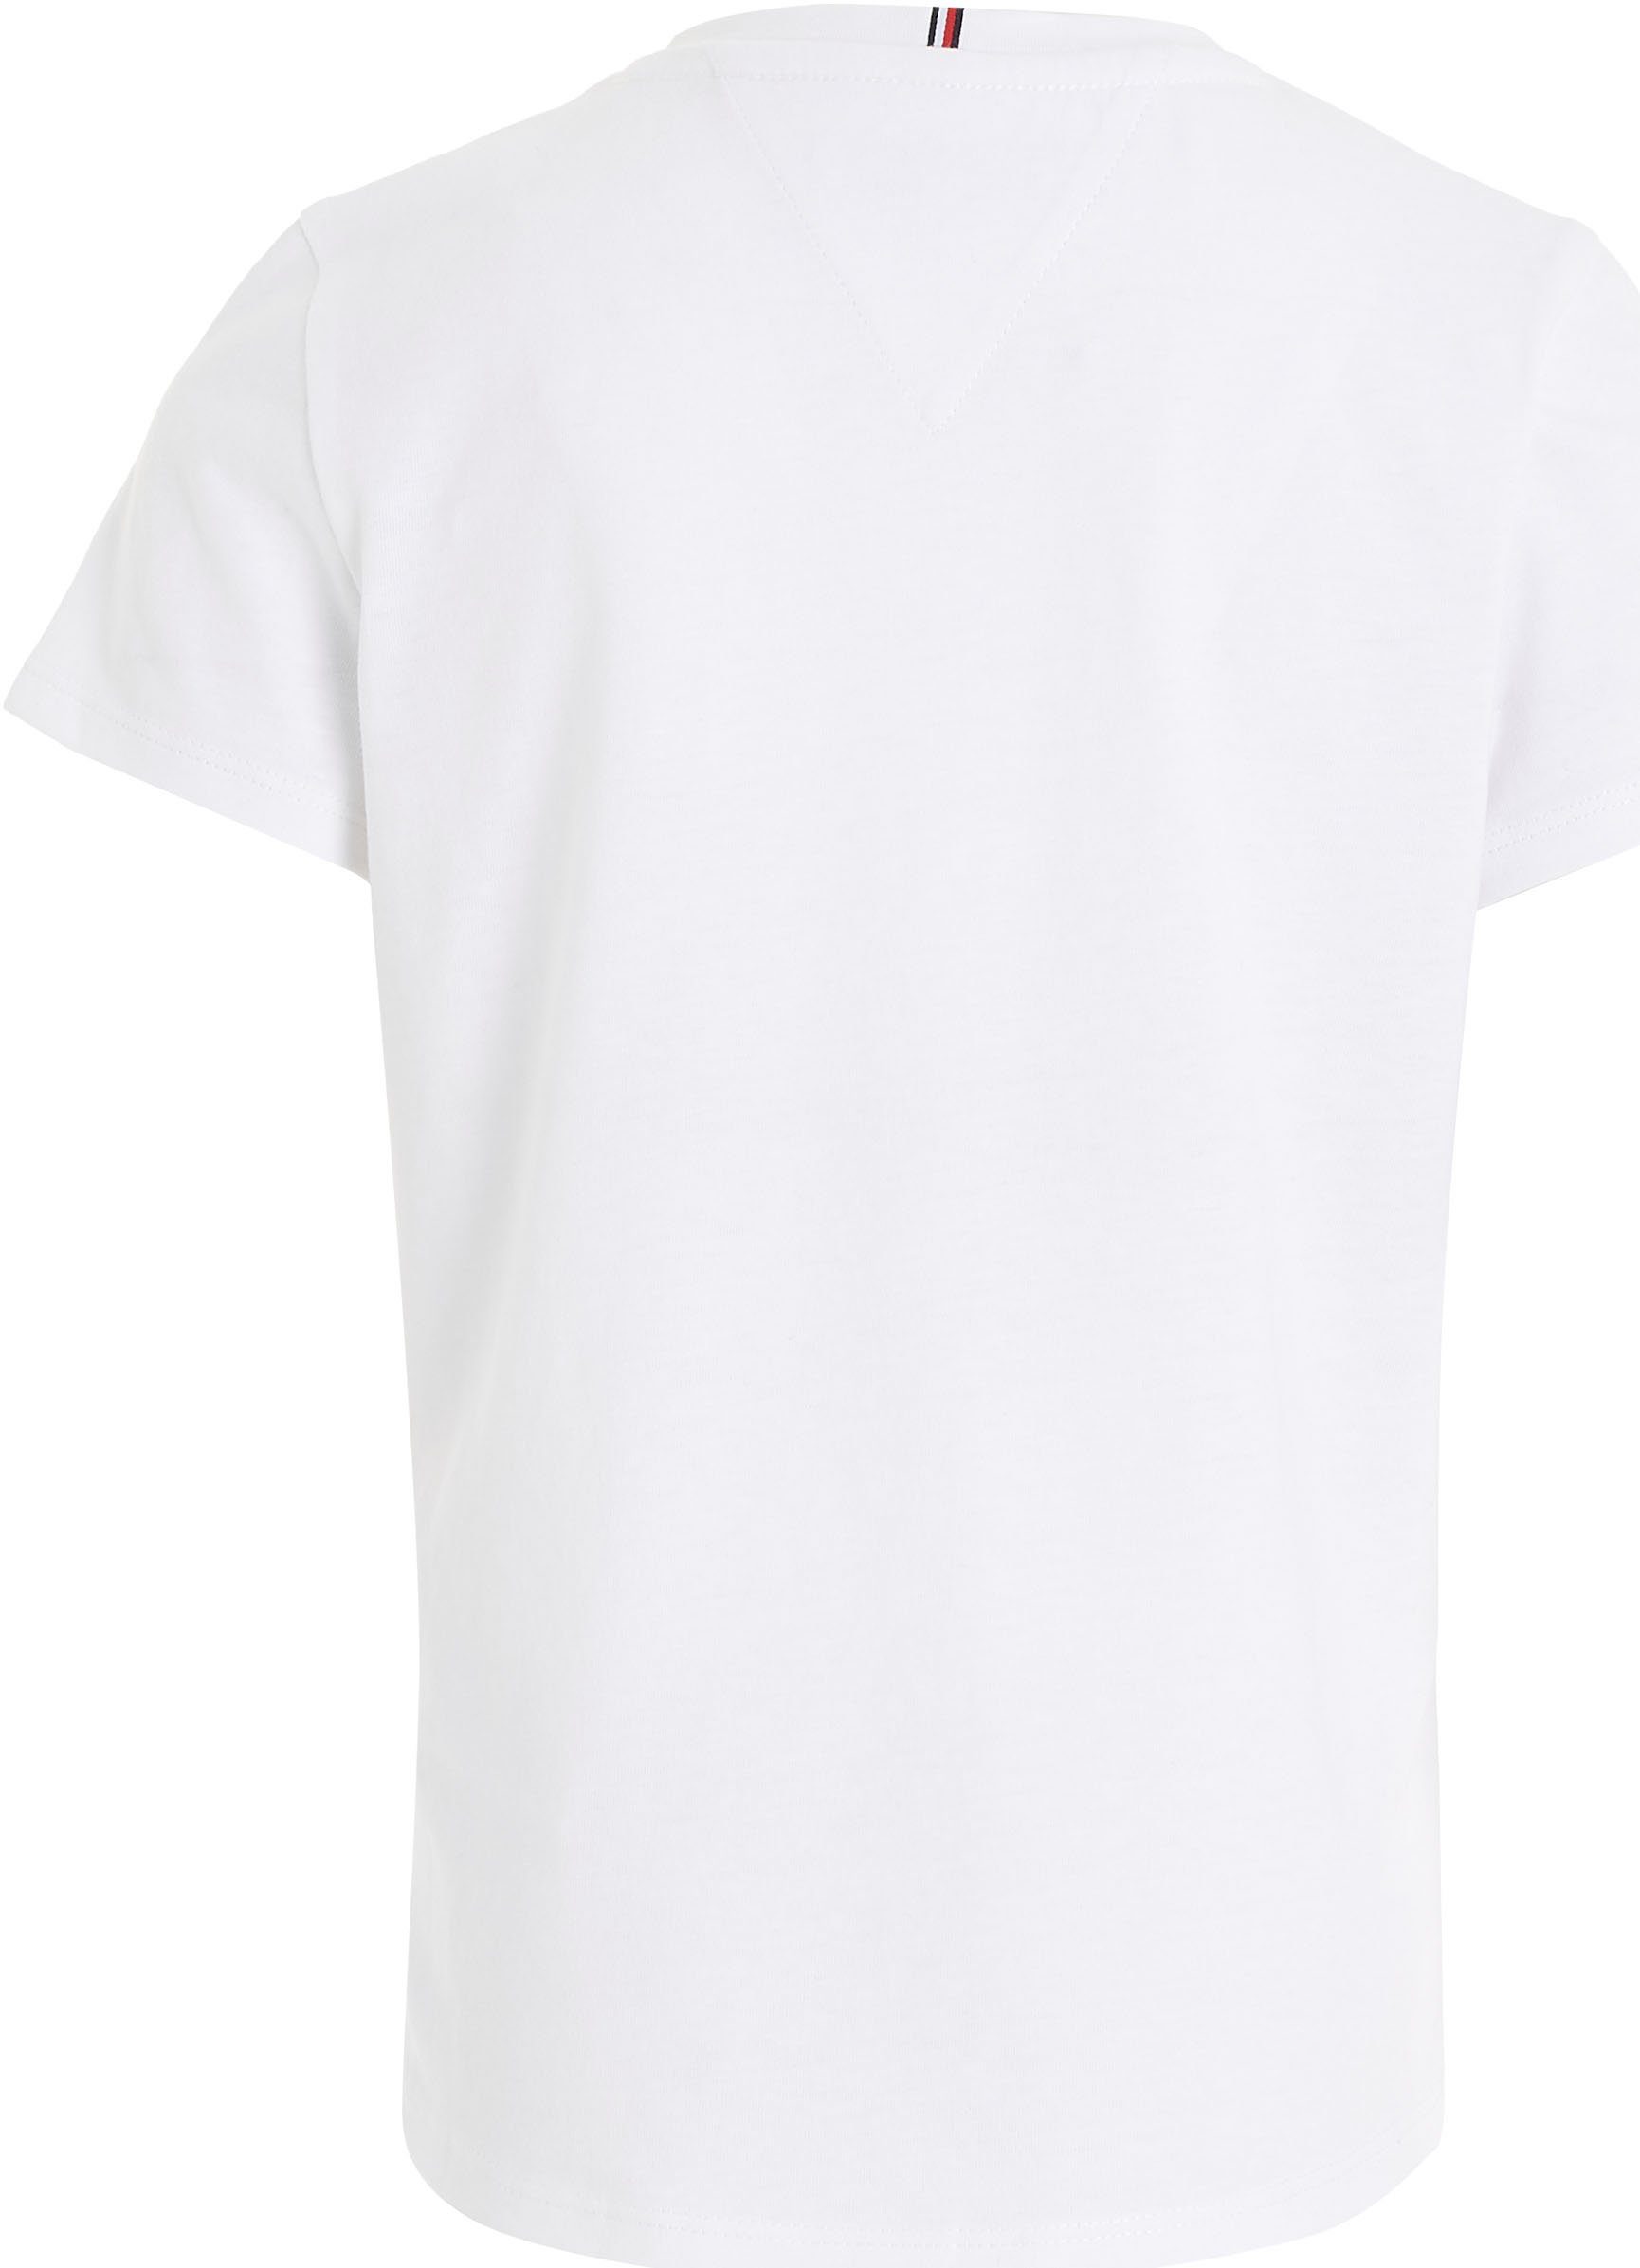 Tommy Hilfiger T-Shirt HILFIGER SCRIPT White S/S Hilfiger TEE mit Logo-Print